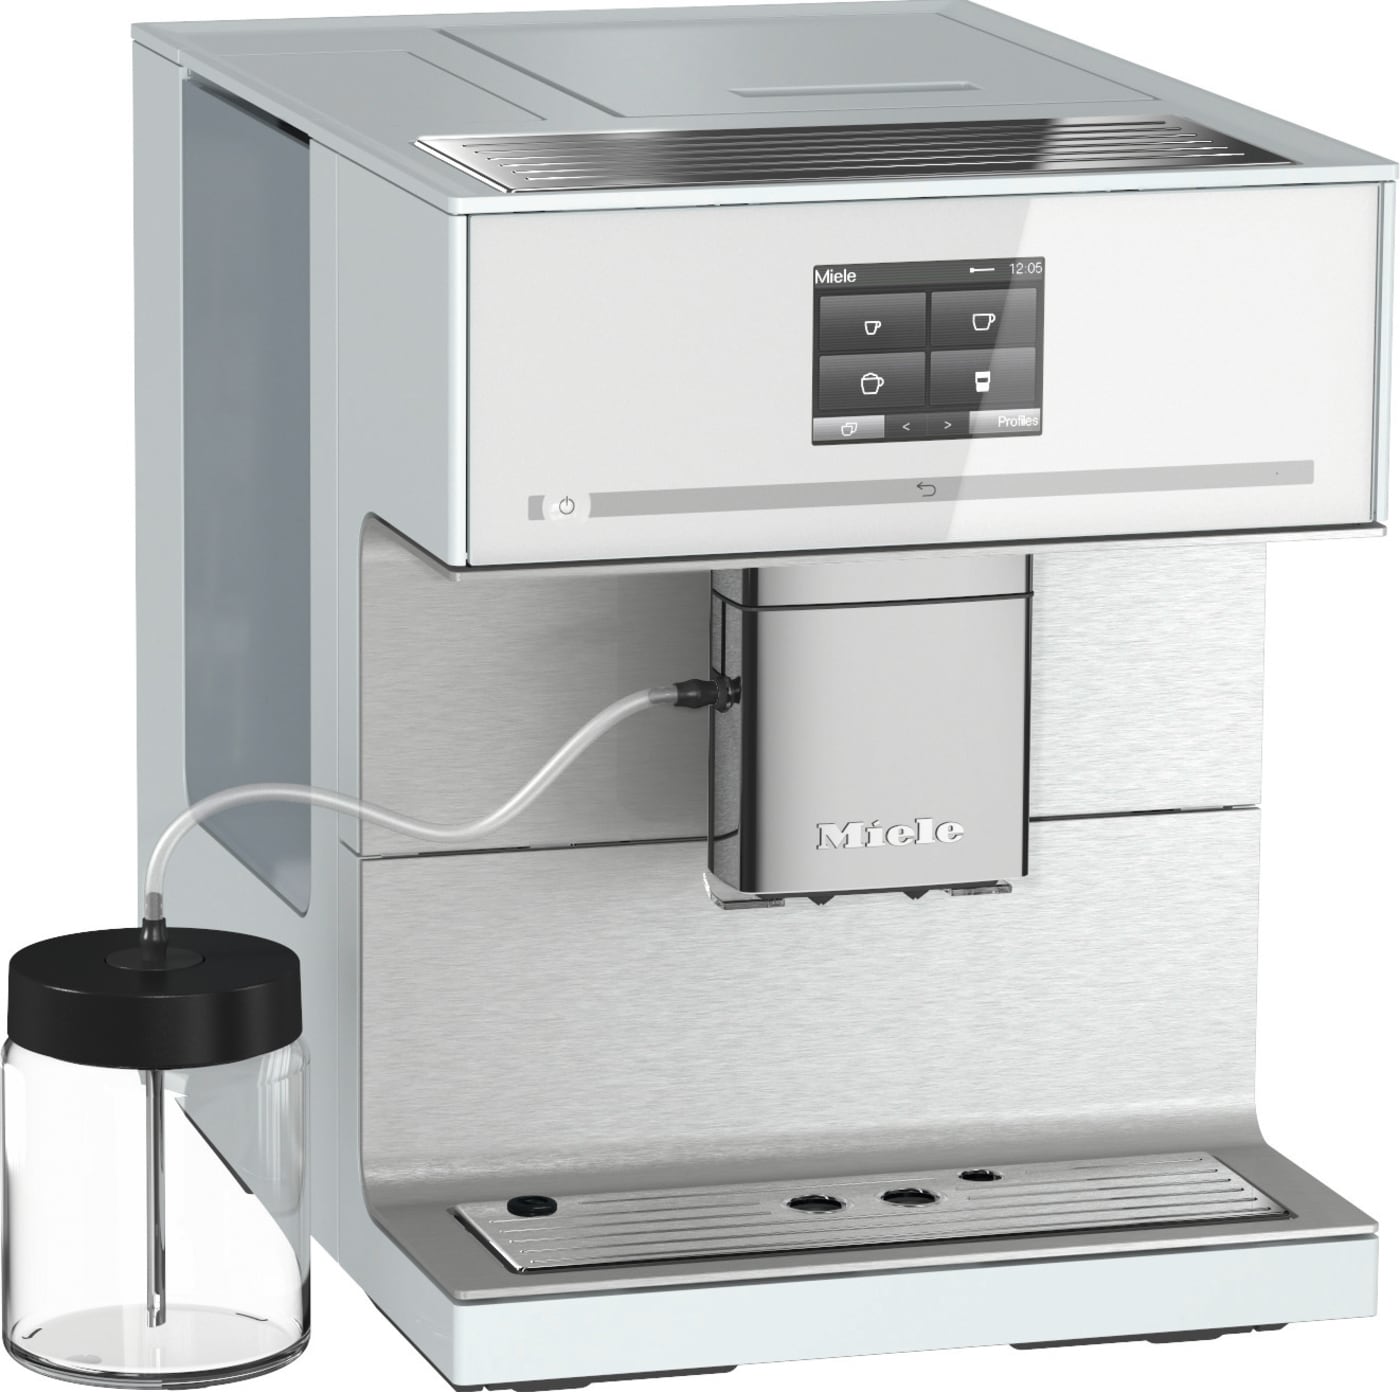 Miele espressomaskine CM7350WH (hvid) | Elgiganten